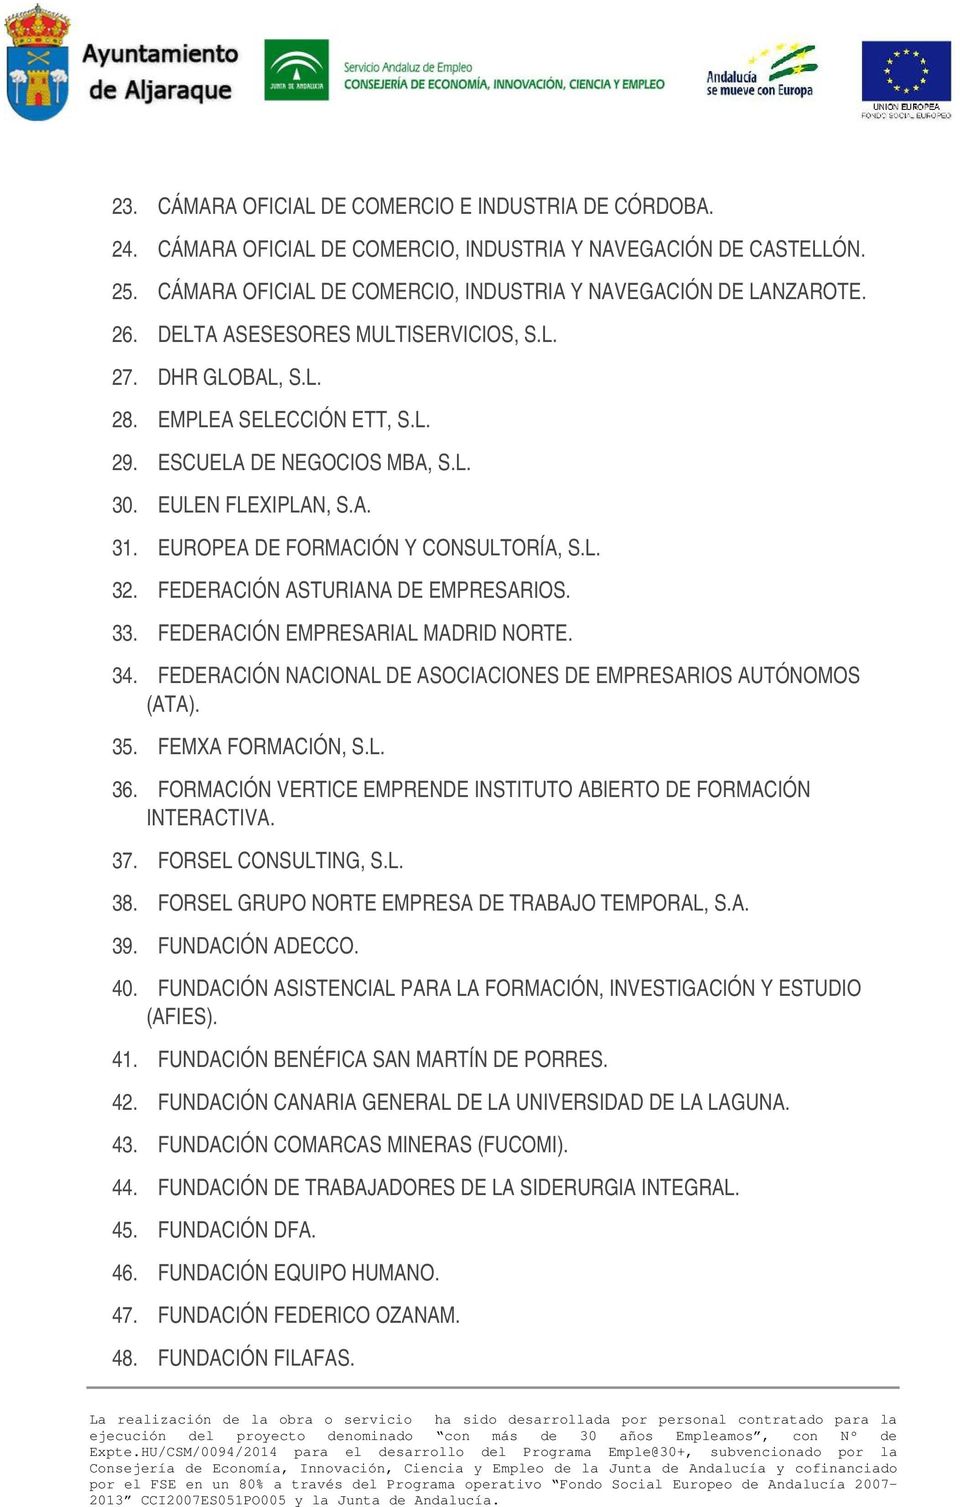 FEDERACIÓN ASTURIANA DE EMPRESARIOS. 33. FEDERACIÓN EMPRESARIAL MADRID NORTE. 34. FEDERACIÓN NACIONAL DE ASOCIACIONES DE EMPRESARIOS AUTÓNOMOS (ATA). 35. FEMXA FORMACIÓN, S.L. 36.